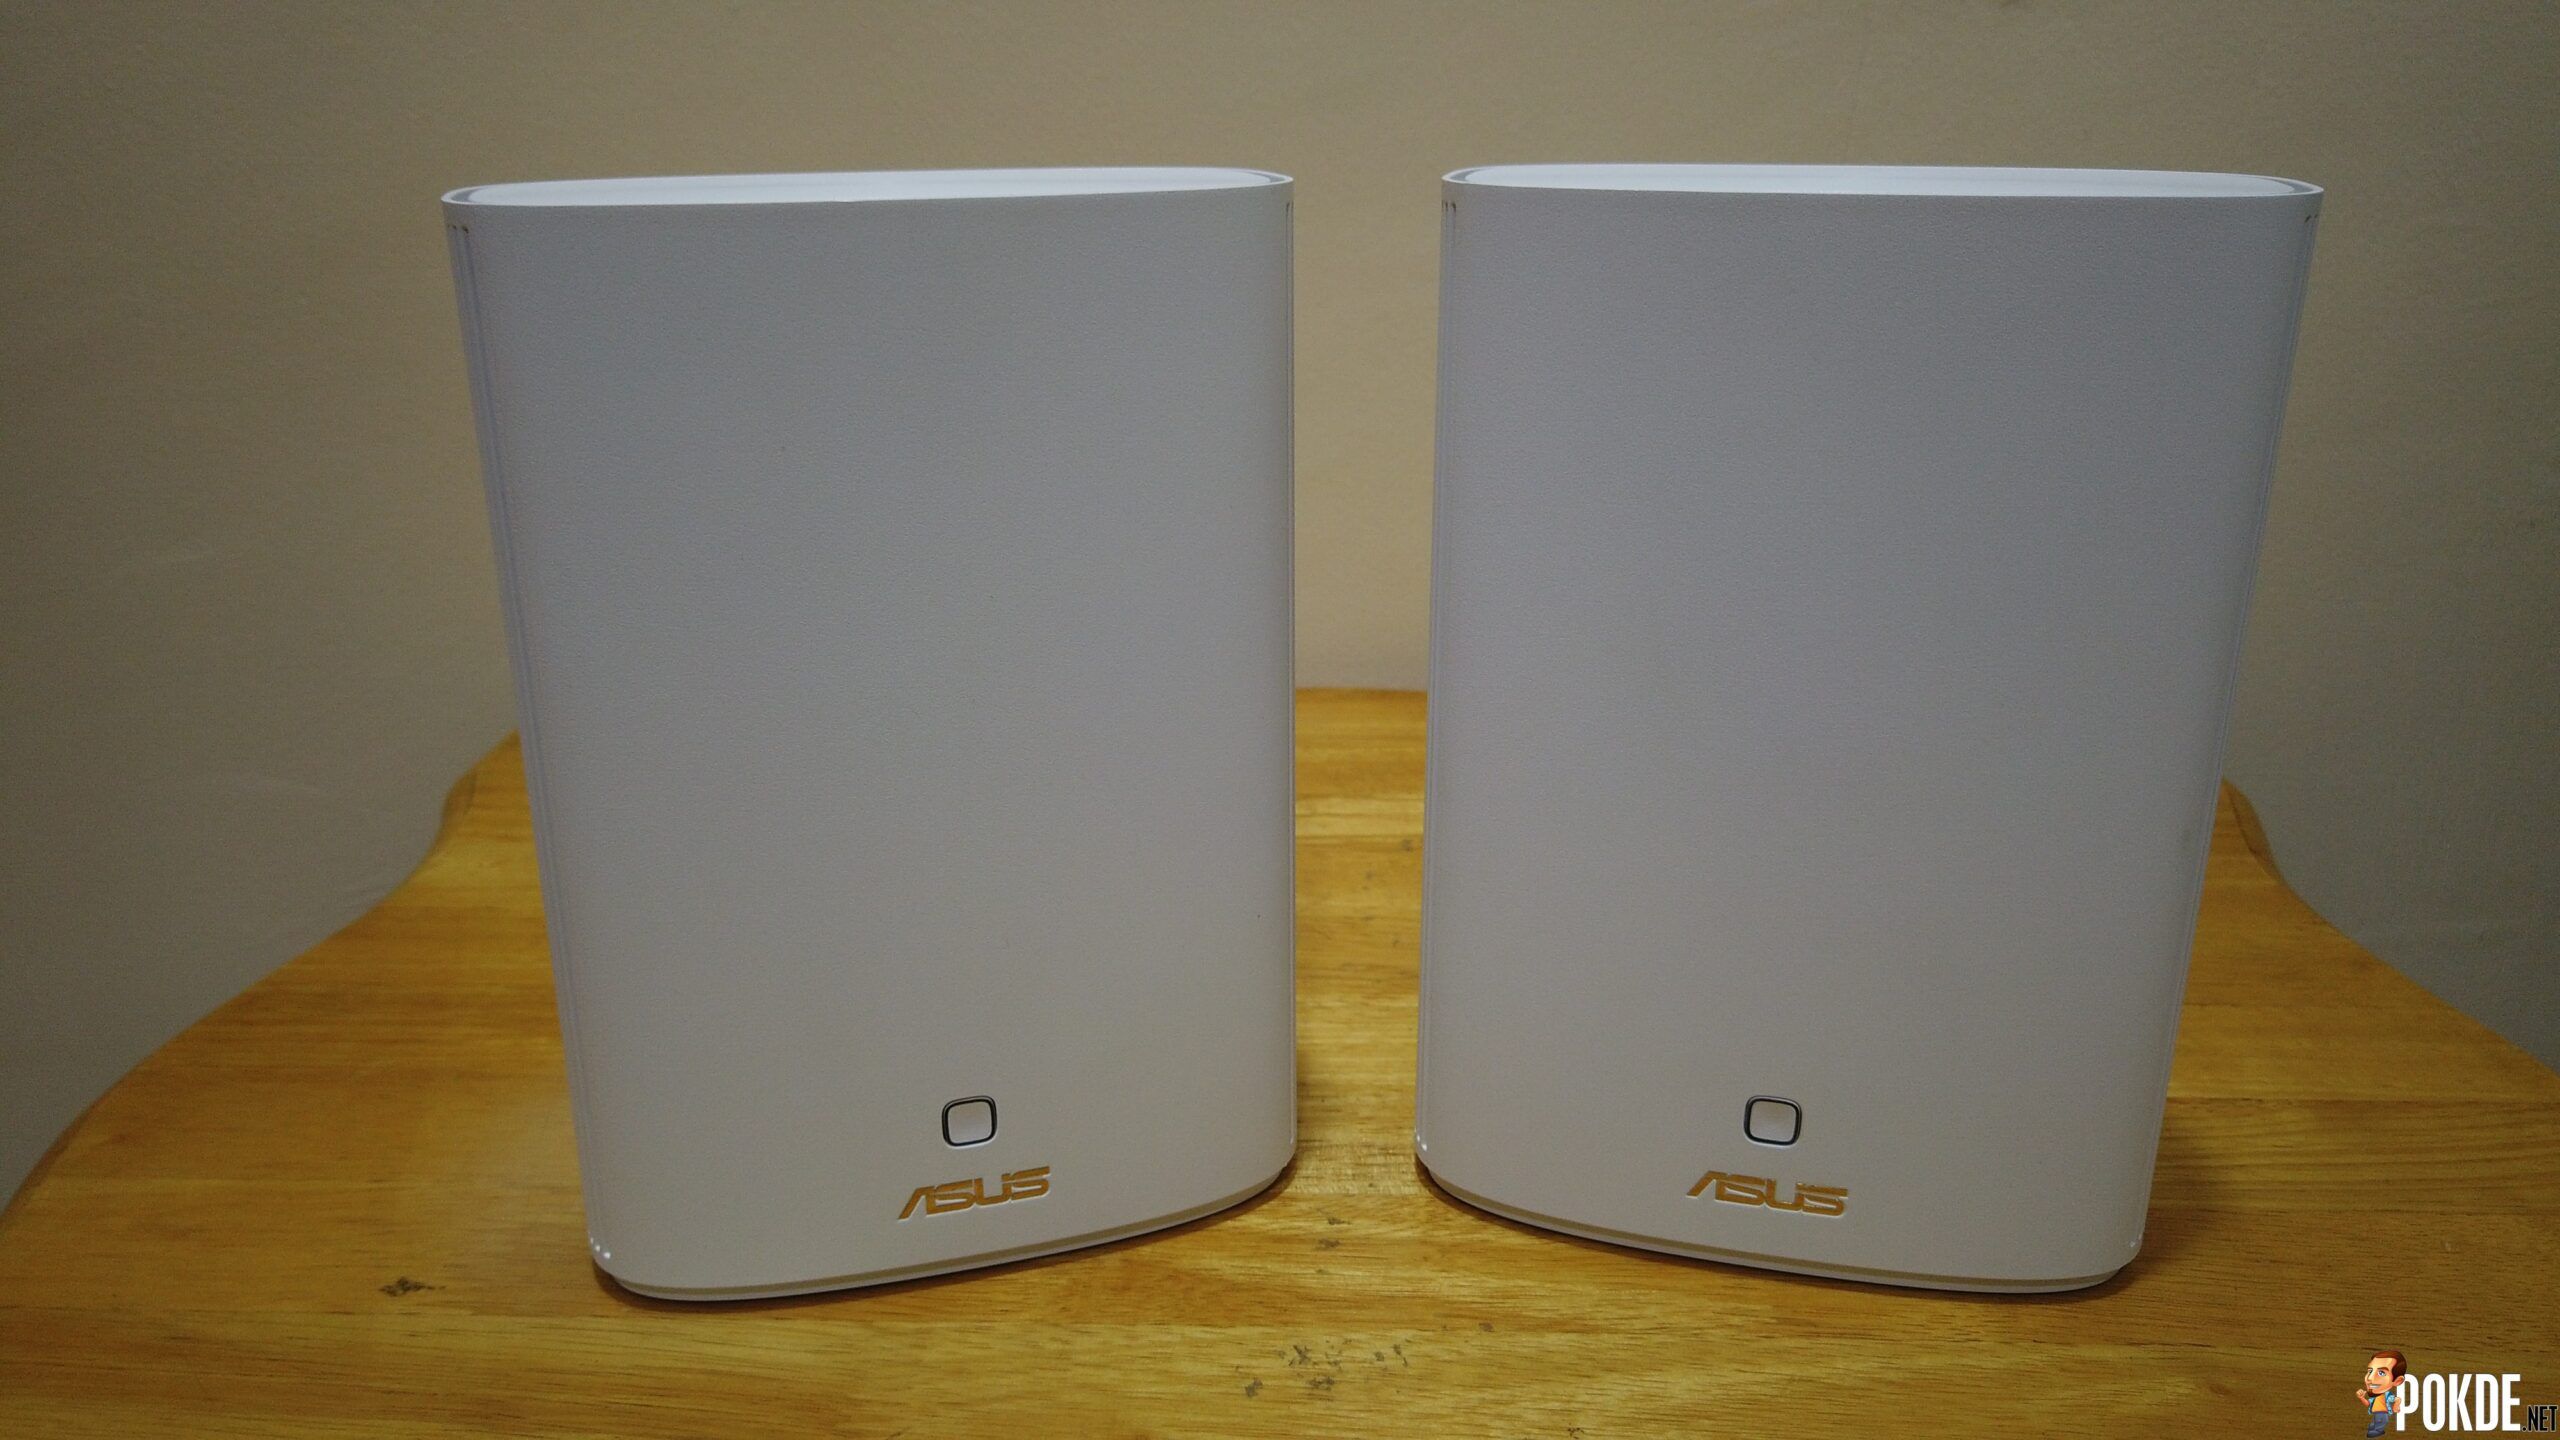 ASUS ZenWiFi AX Hybrid (XP4) Mesh Review - 5,500 sqft Wi-Fi Coverage 23